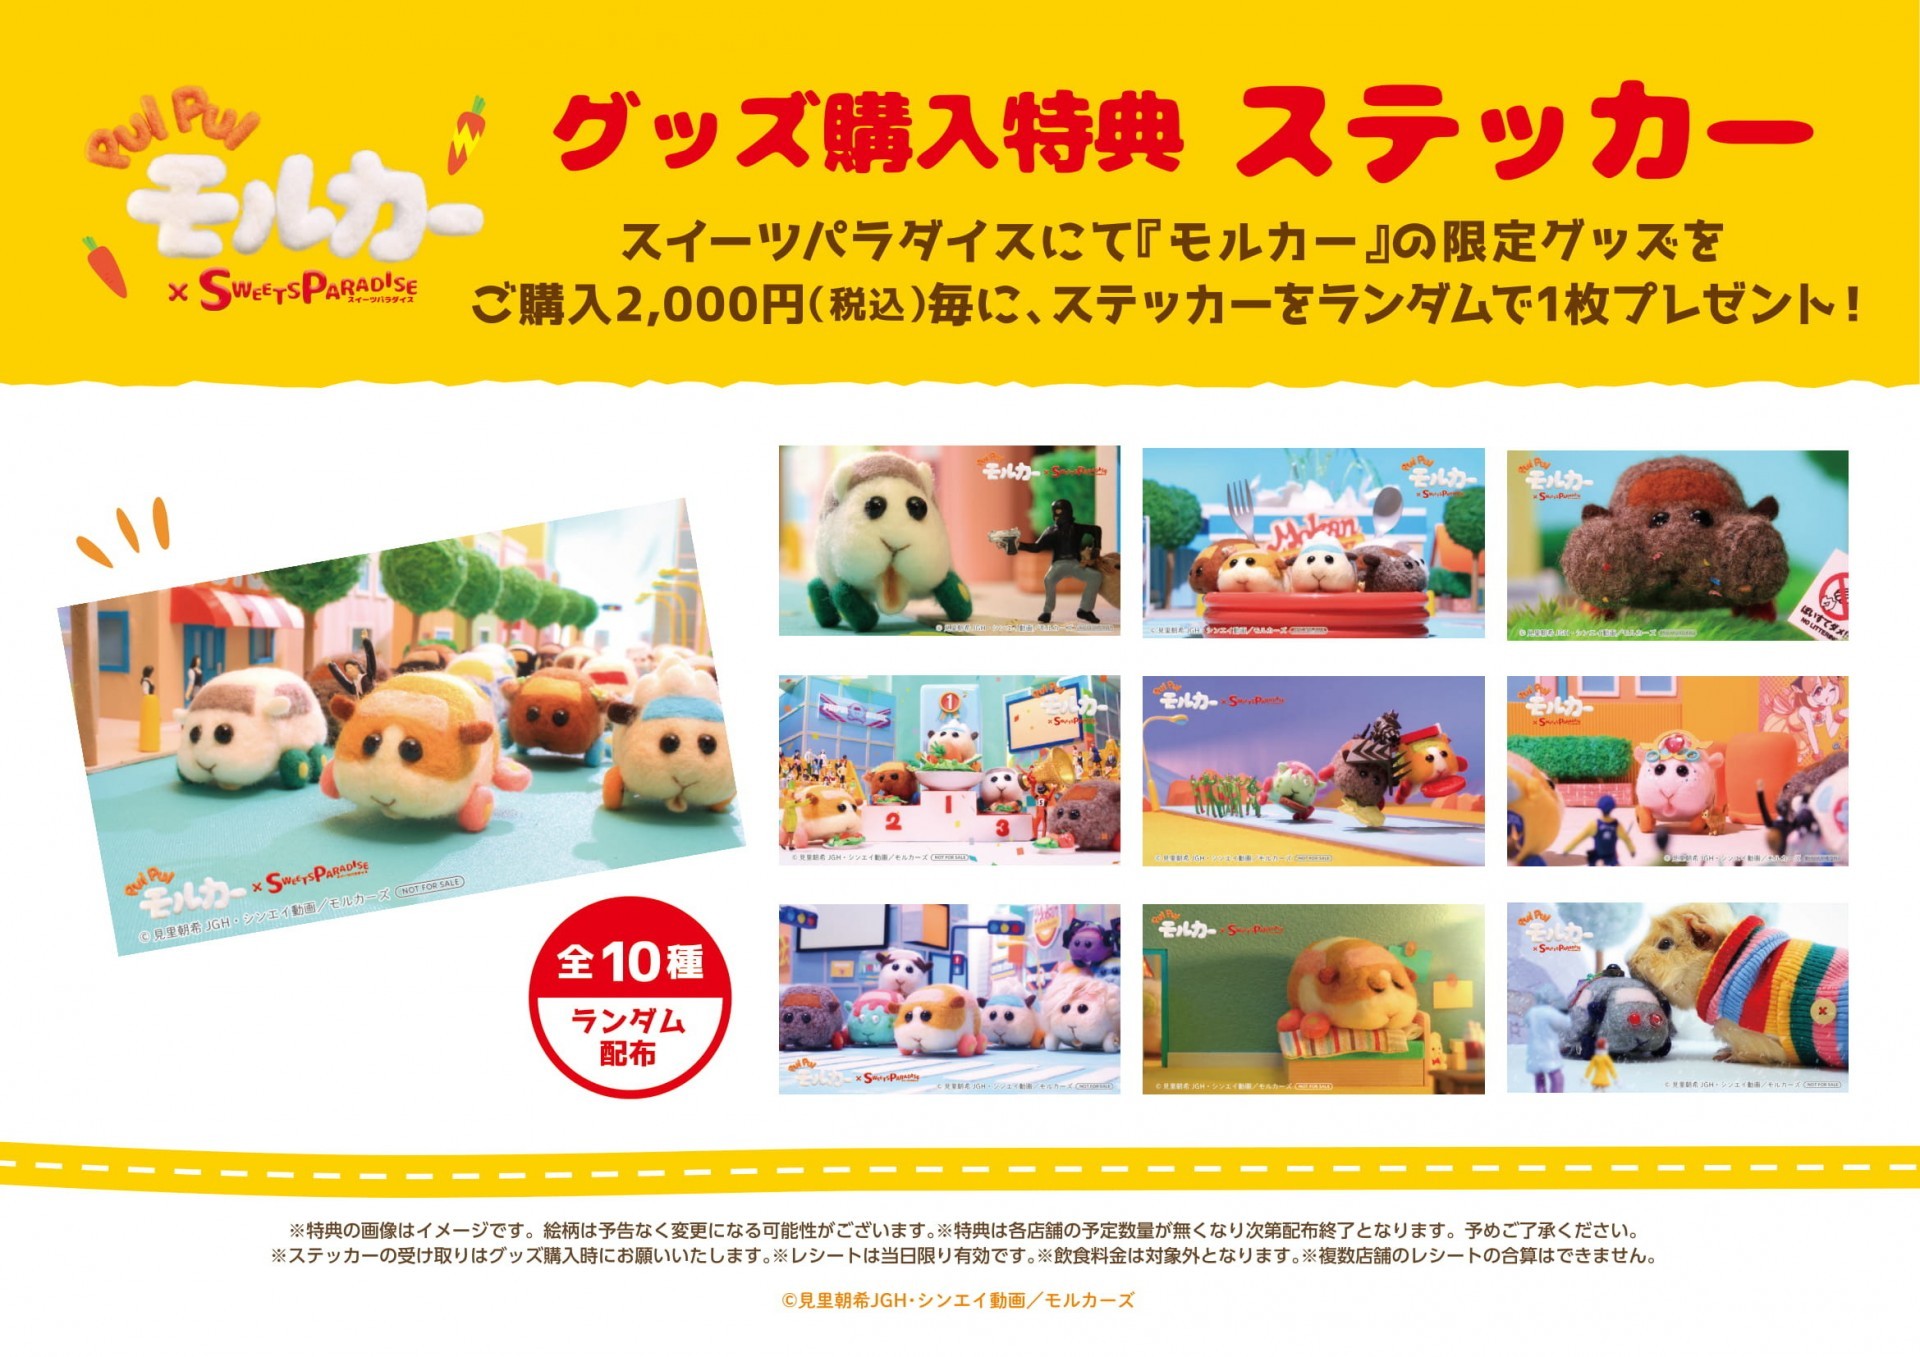 《天竺鼠車車》與日本甜點連鎖店合作推出期間限定餐點與周邊